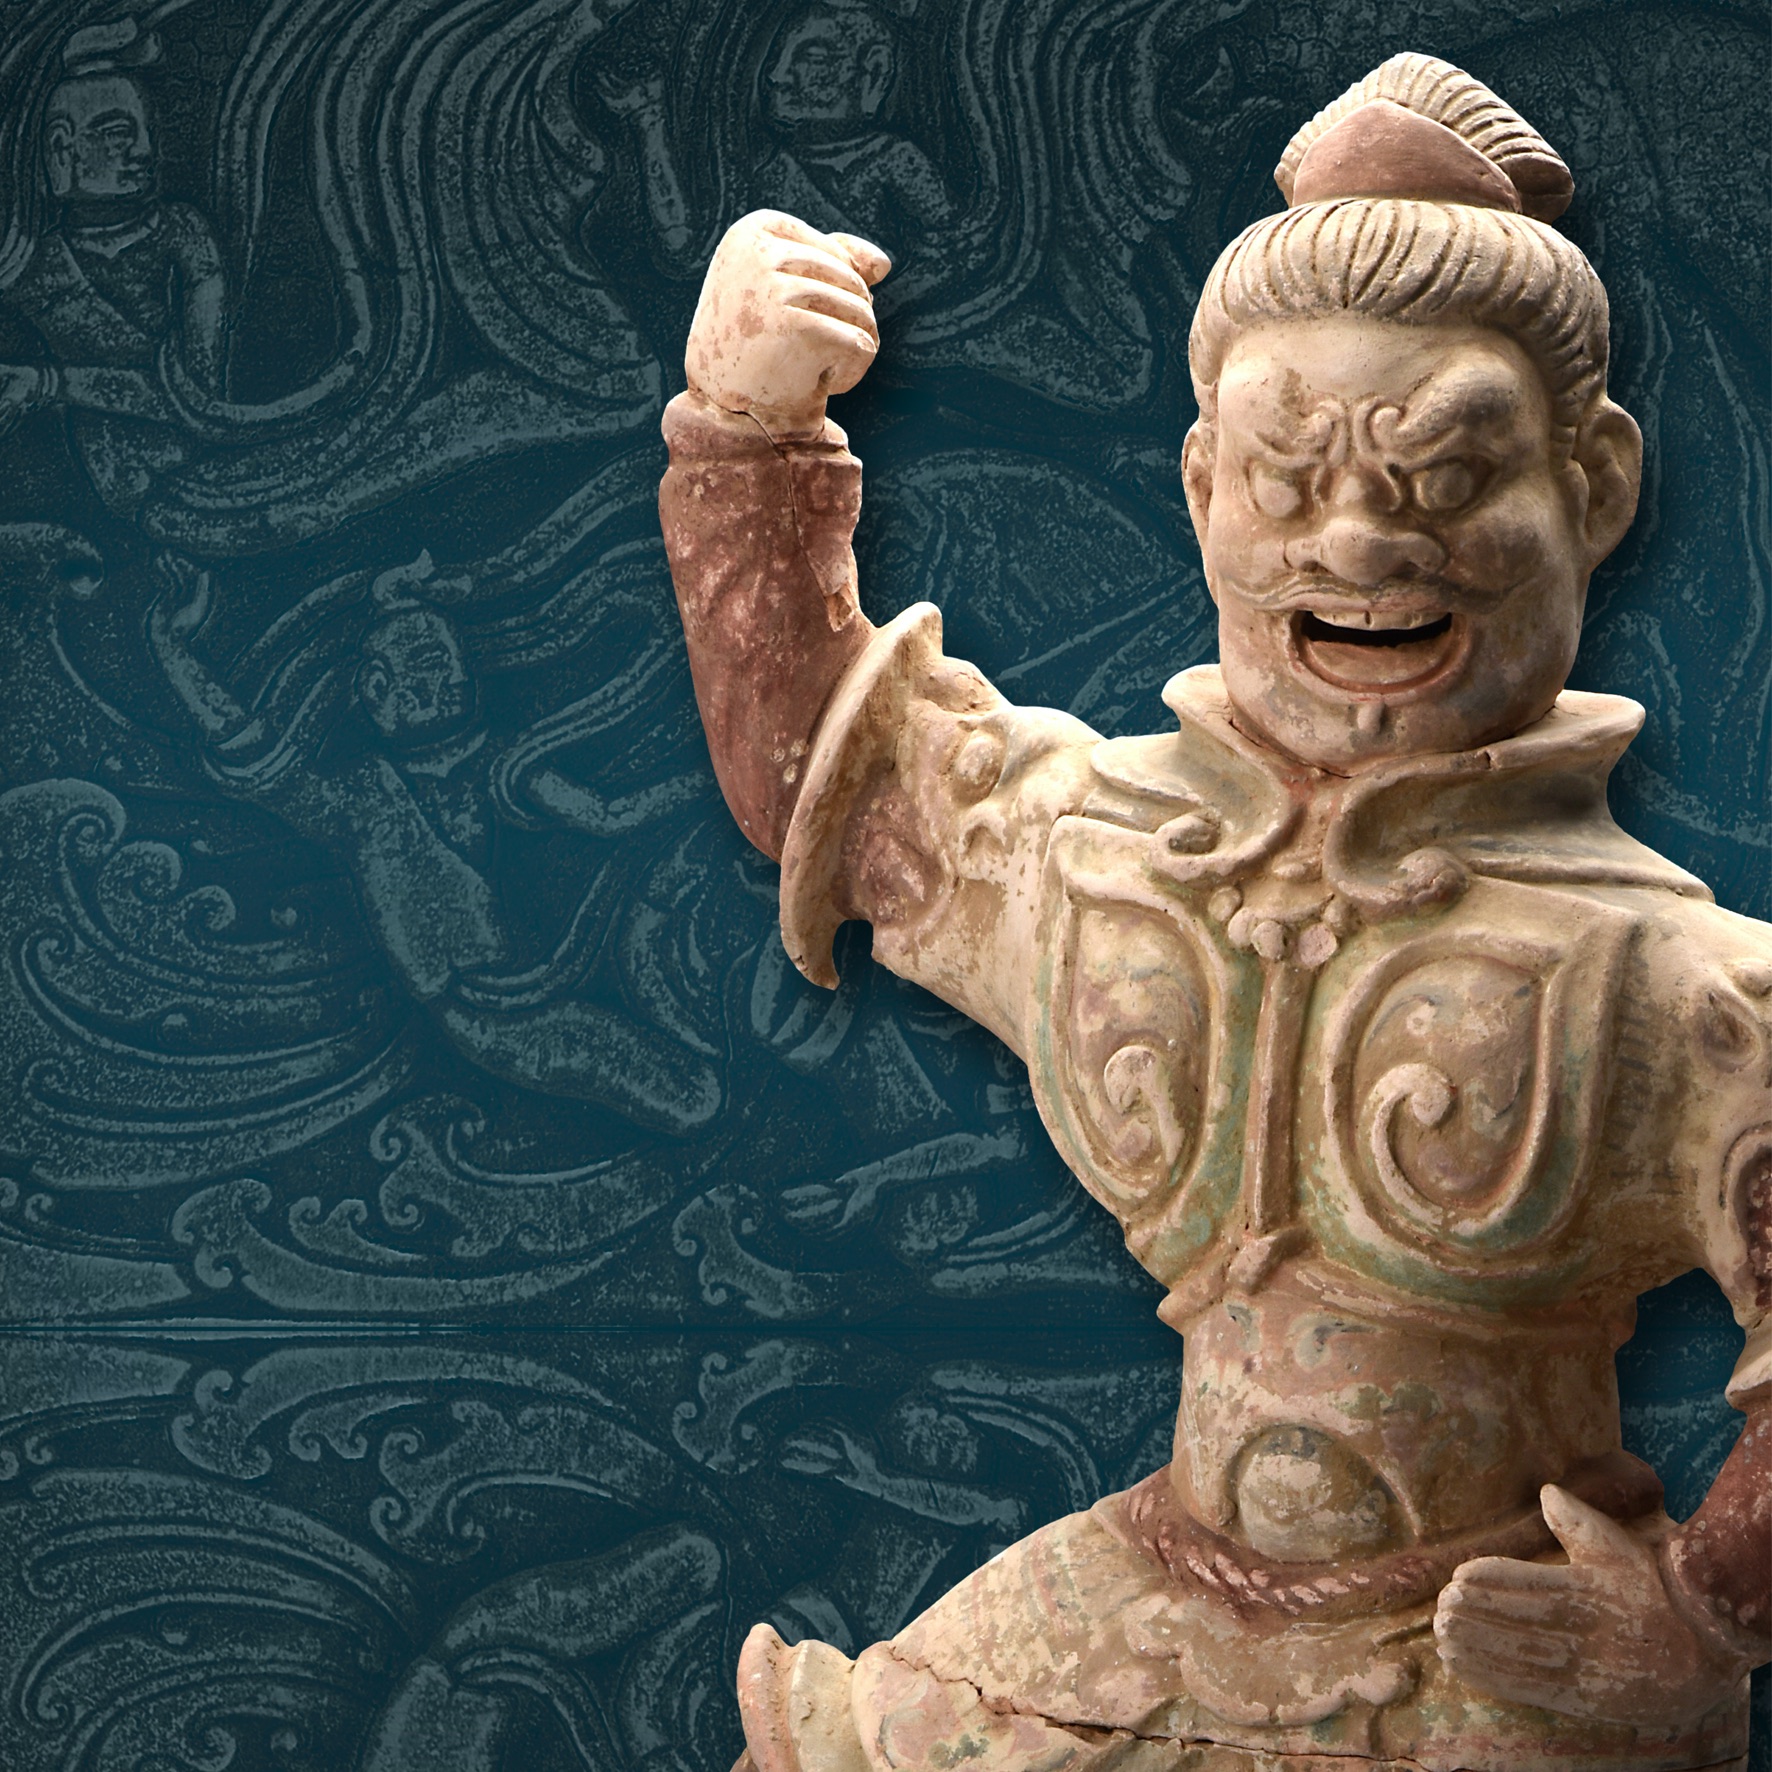 Treasures of Ancient China